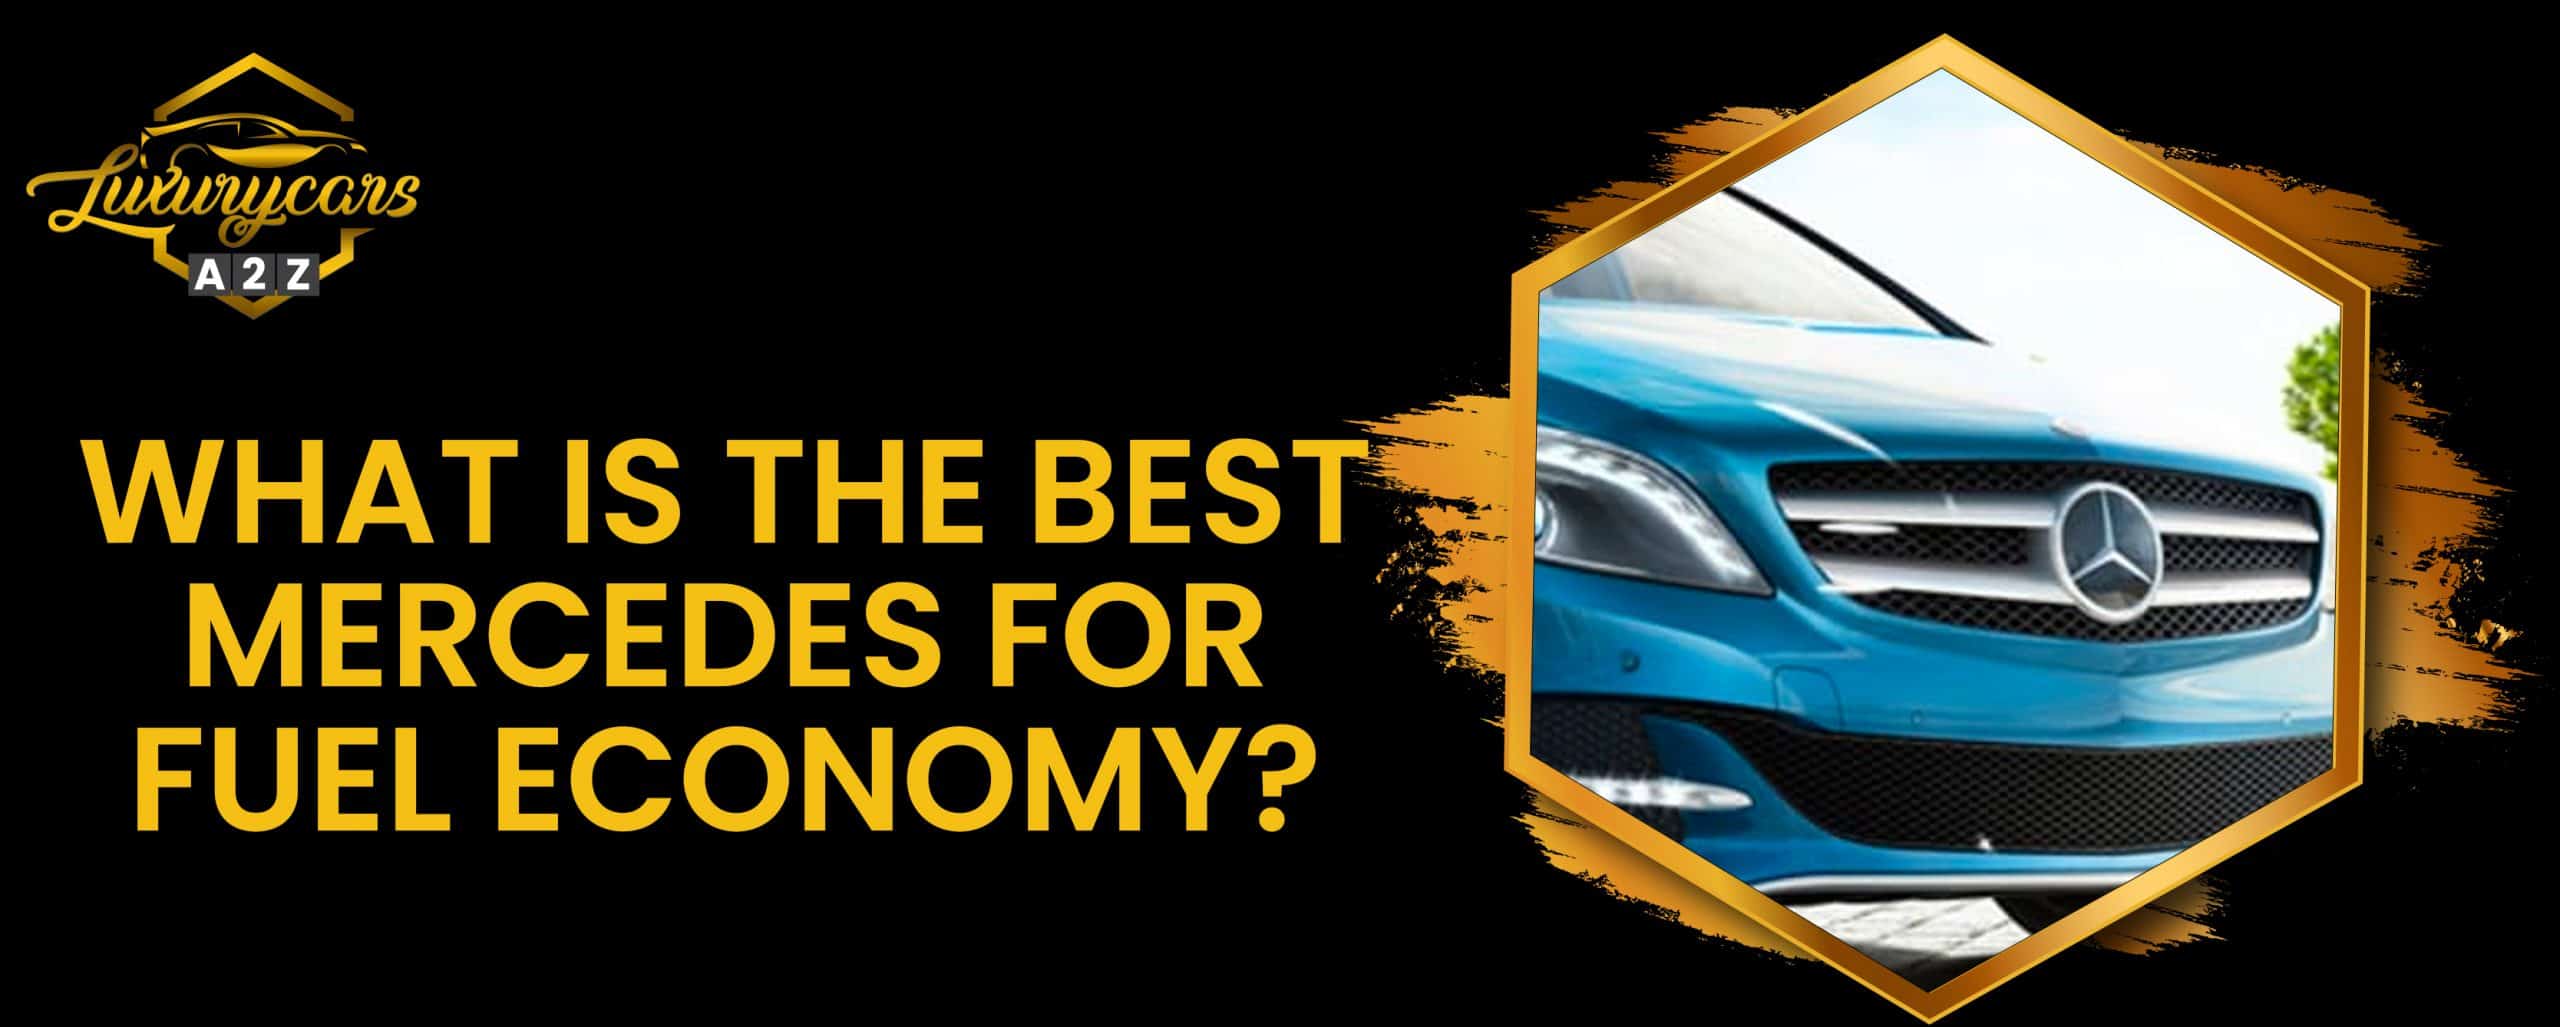 Quelle est la meilleure Mercedes en termes d'économie de carburant ?